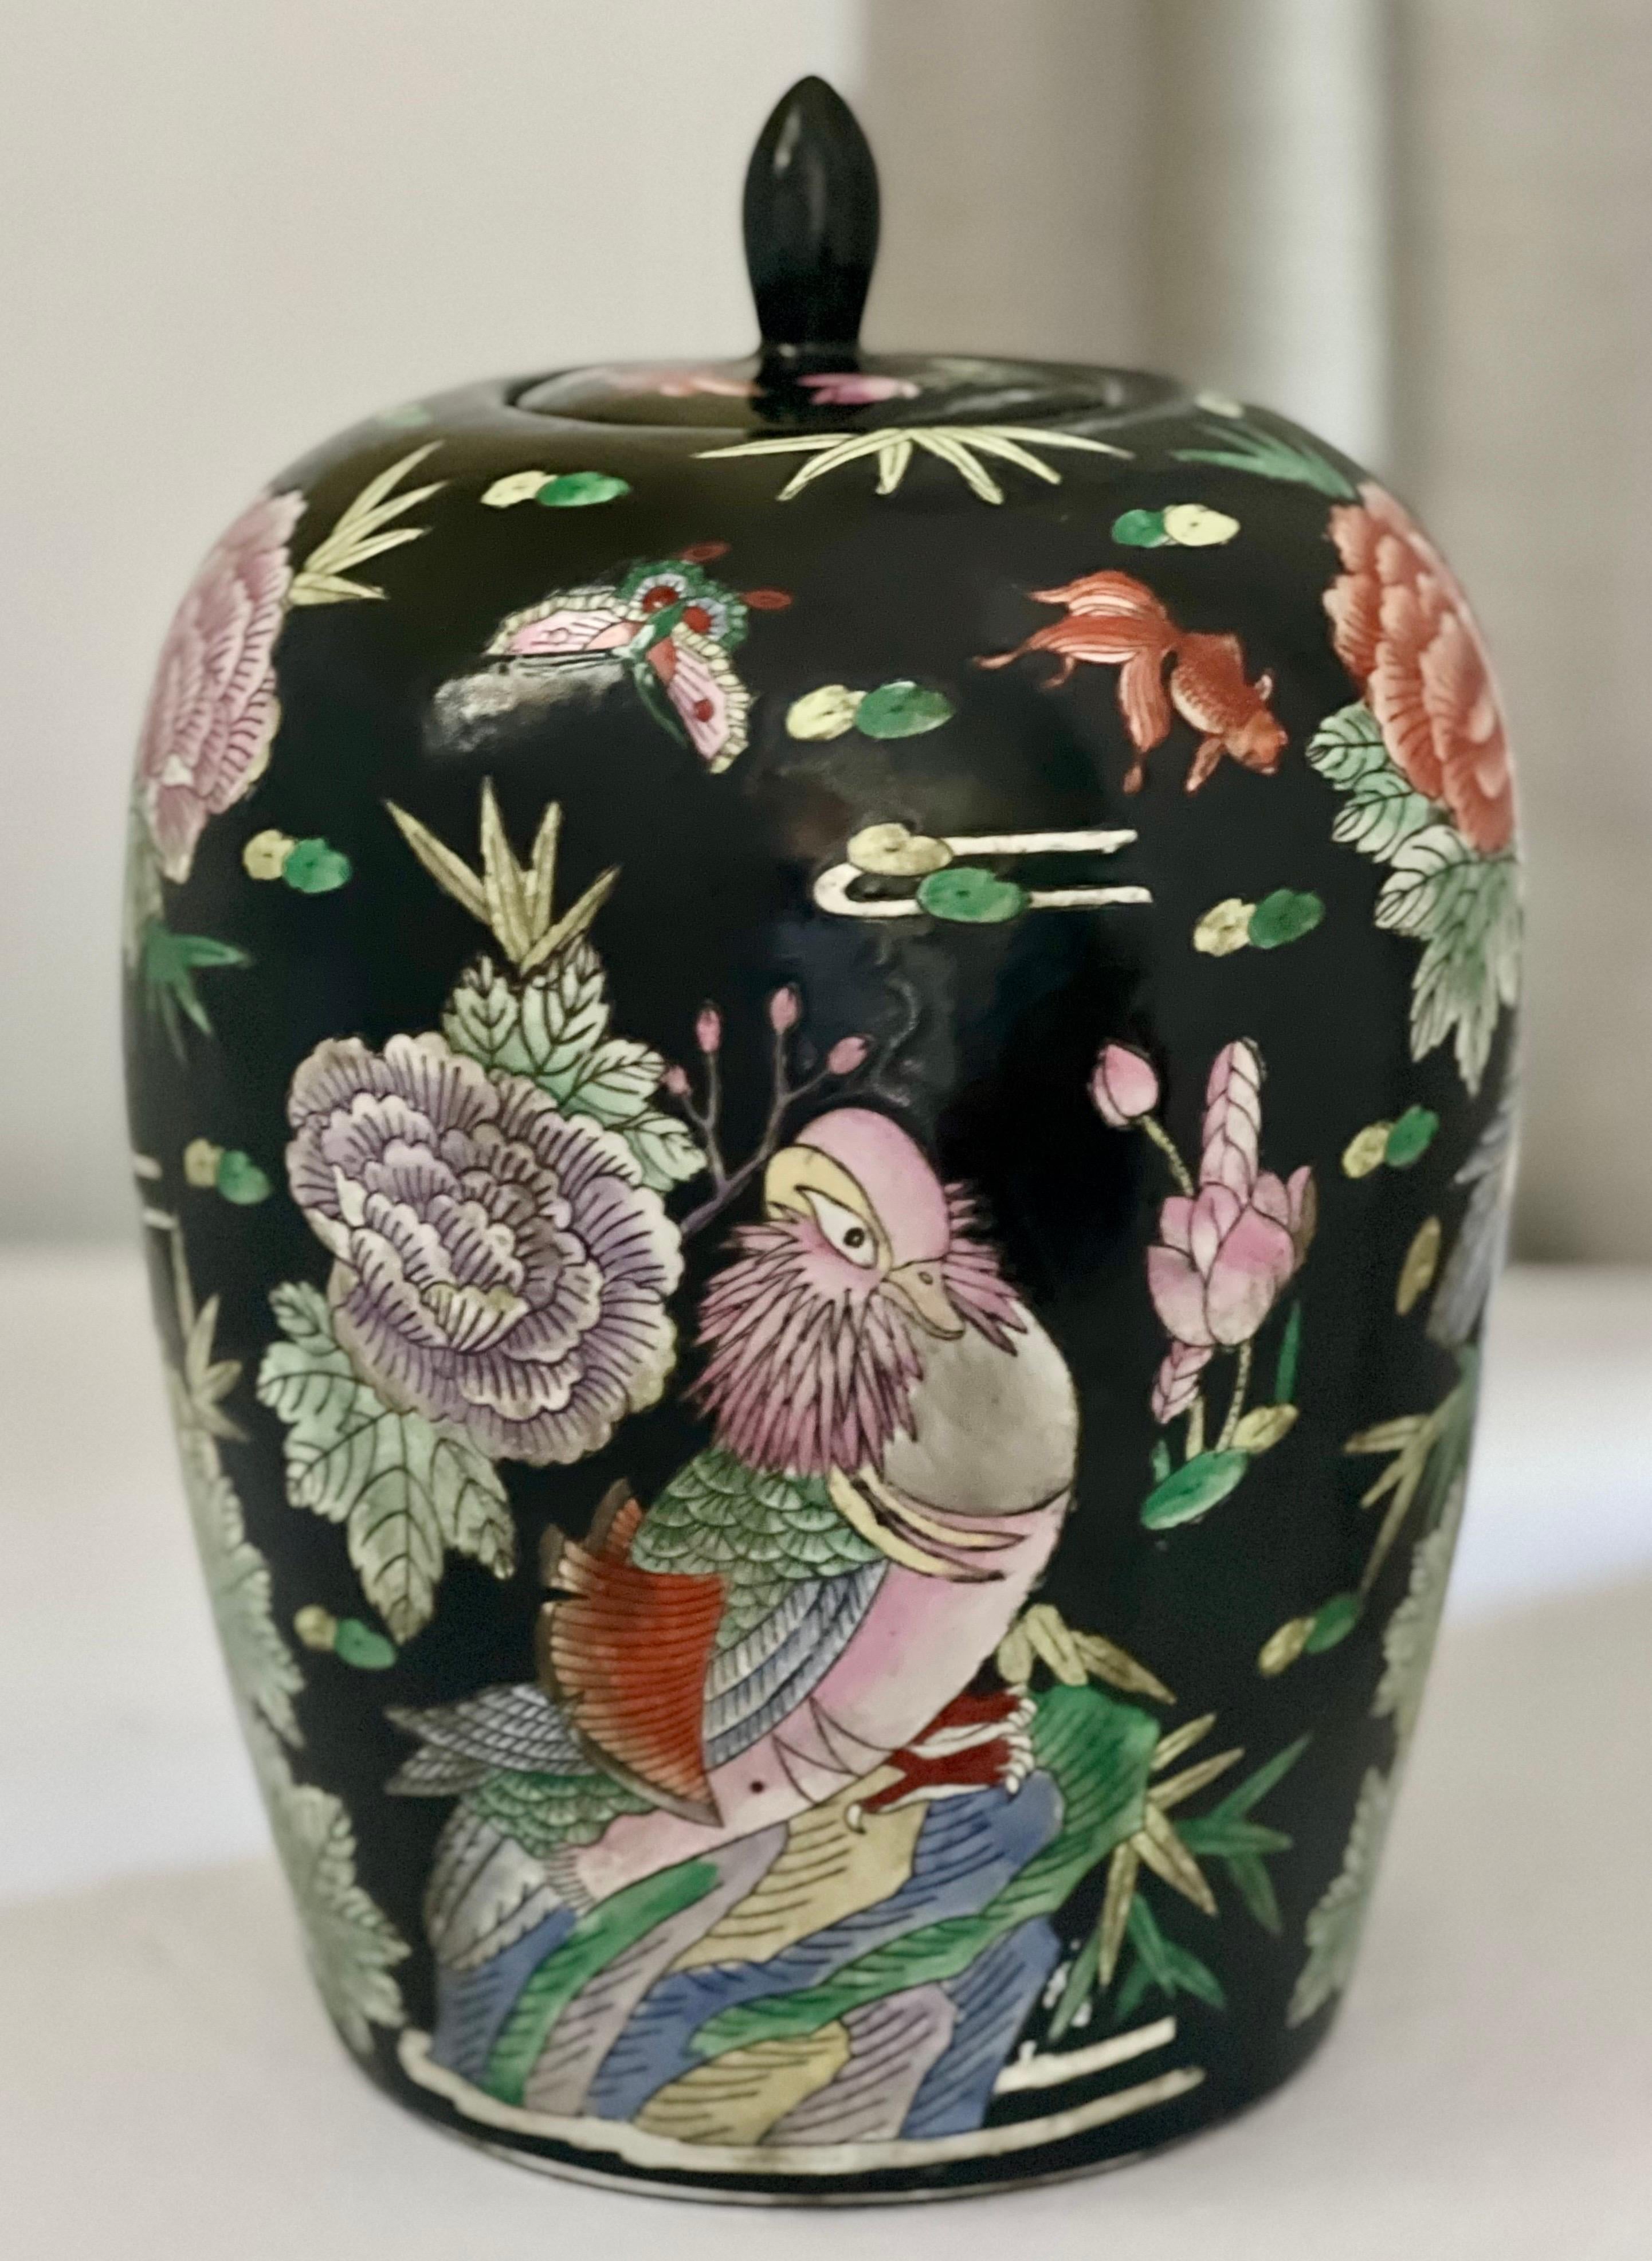 Pot à gingembre ovoïde en porcelaine de la famille noire chinoise du début du 20e siècle avec couvercle.

Merveilleuse jarre de forme ovoïde avec un design sur le thème de la nature peint à la main avec de grands oiseaux, des fleurs, des poissons